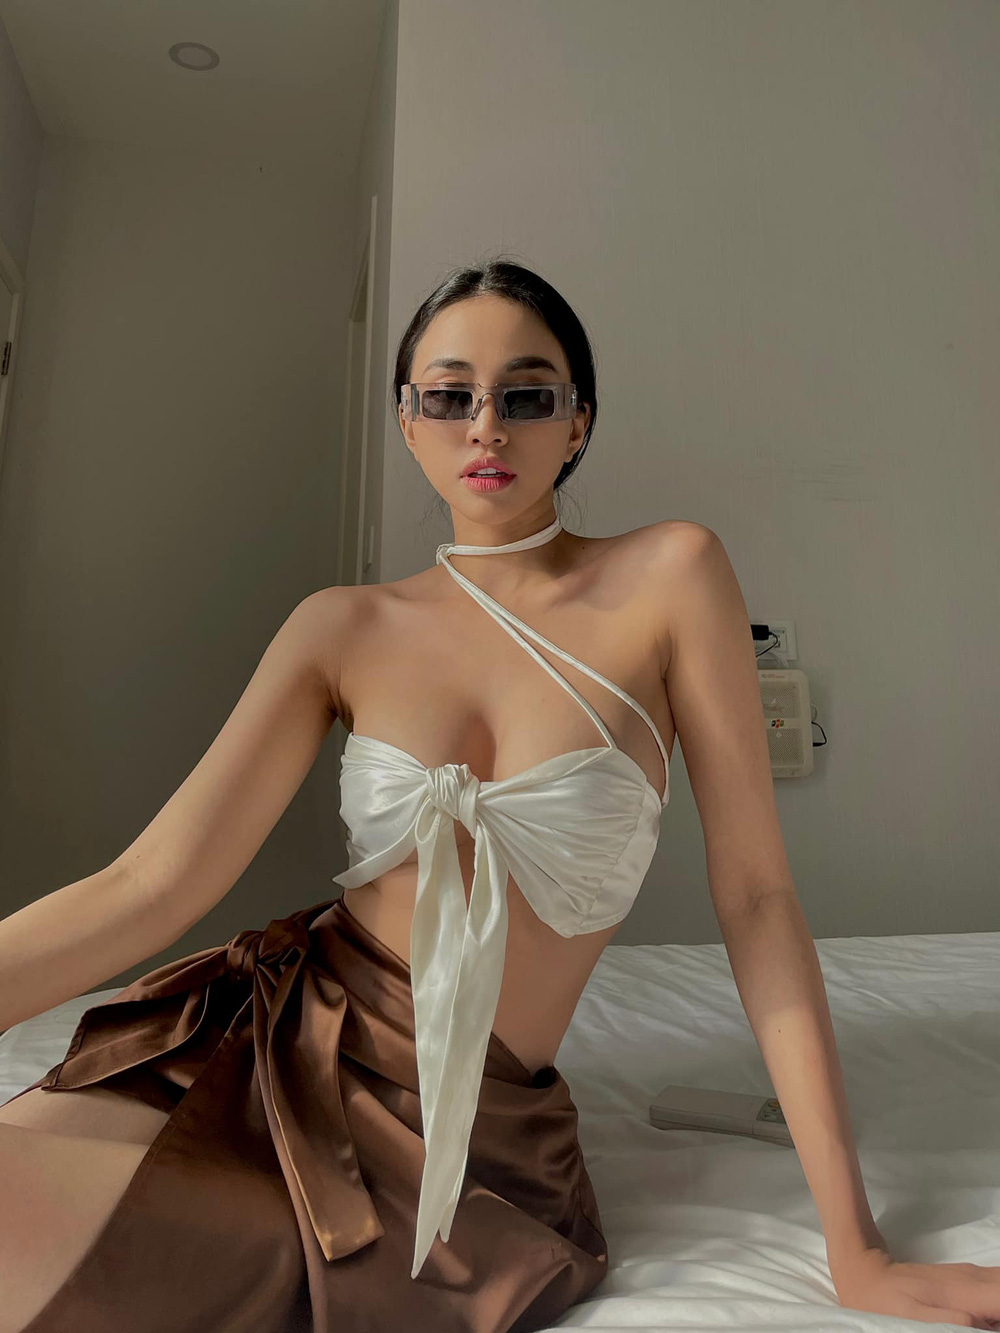 Thiên Nga 'The Face' khoe body nóng bỏng trong trang phục bikini táo bạo, mong muốn 'lấn sân' làm diễn viên chuyên nghiệp - Ảnh 5